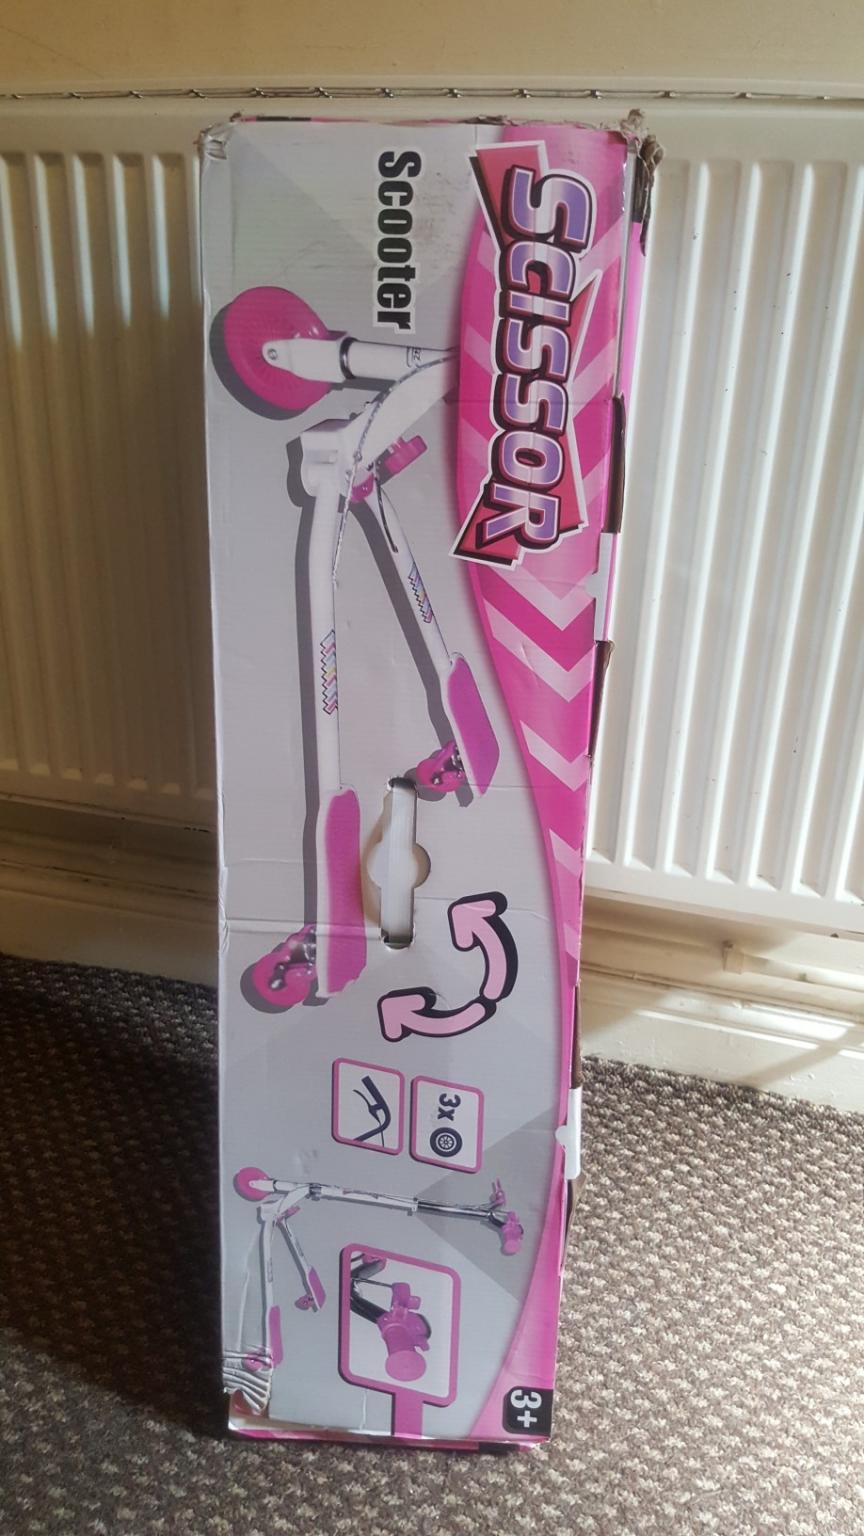 scissor scooter pink